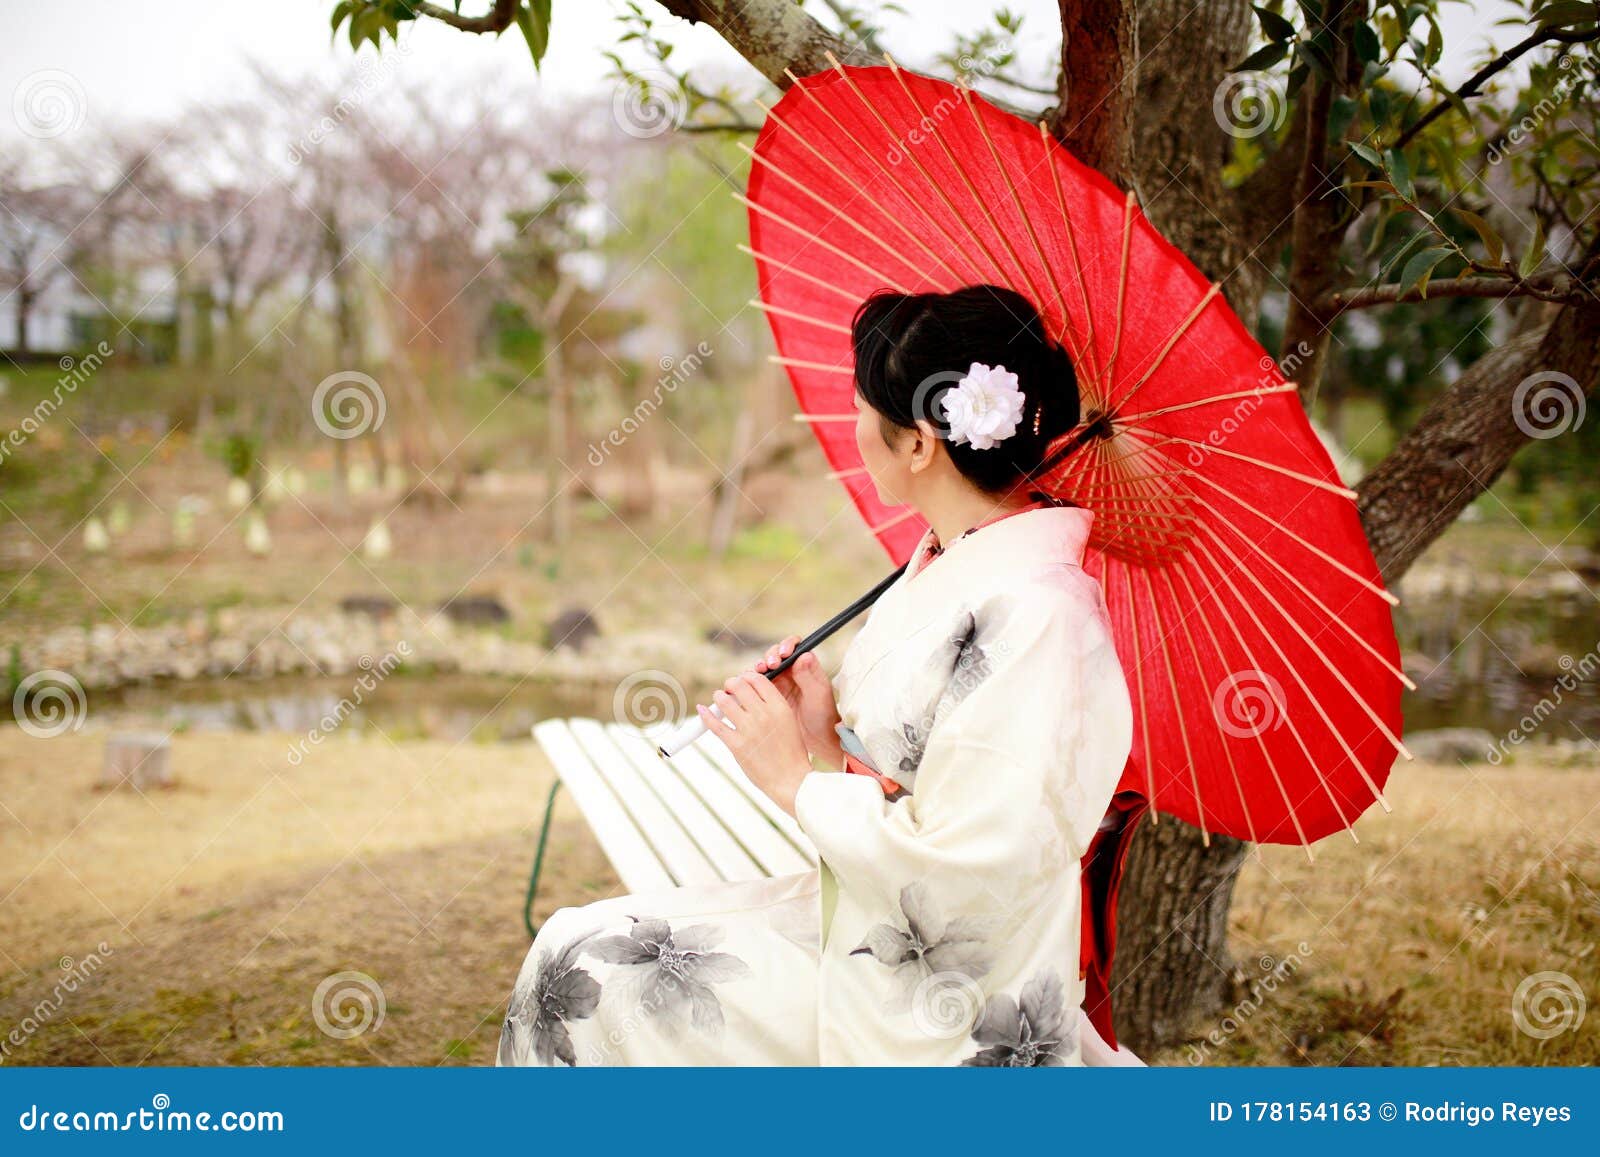 和服女人樱花库存图片 图片包括有白天 活动 和服 开放 庭院 东京 日本 纵向 文化